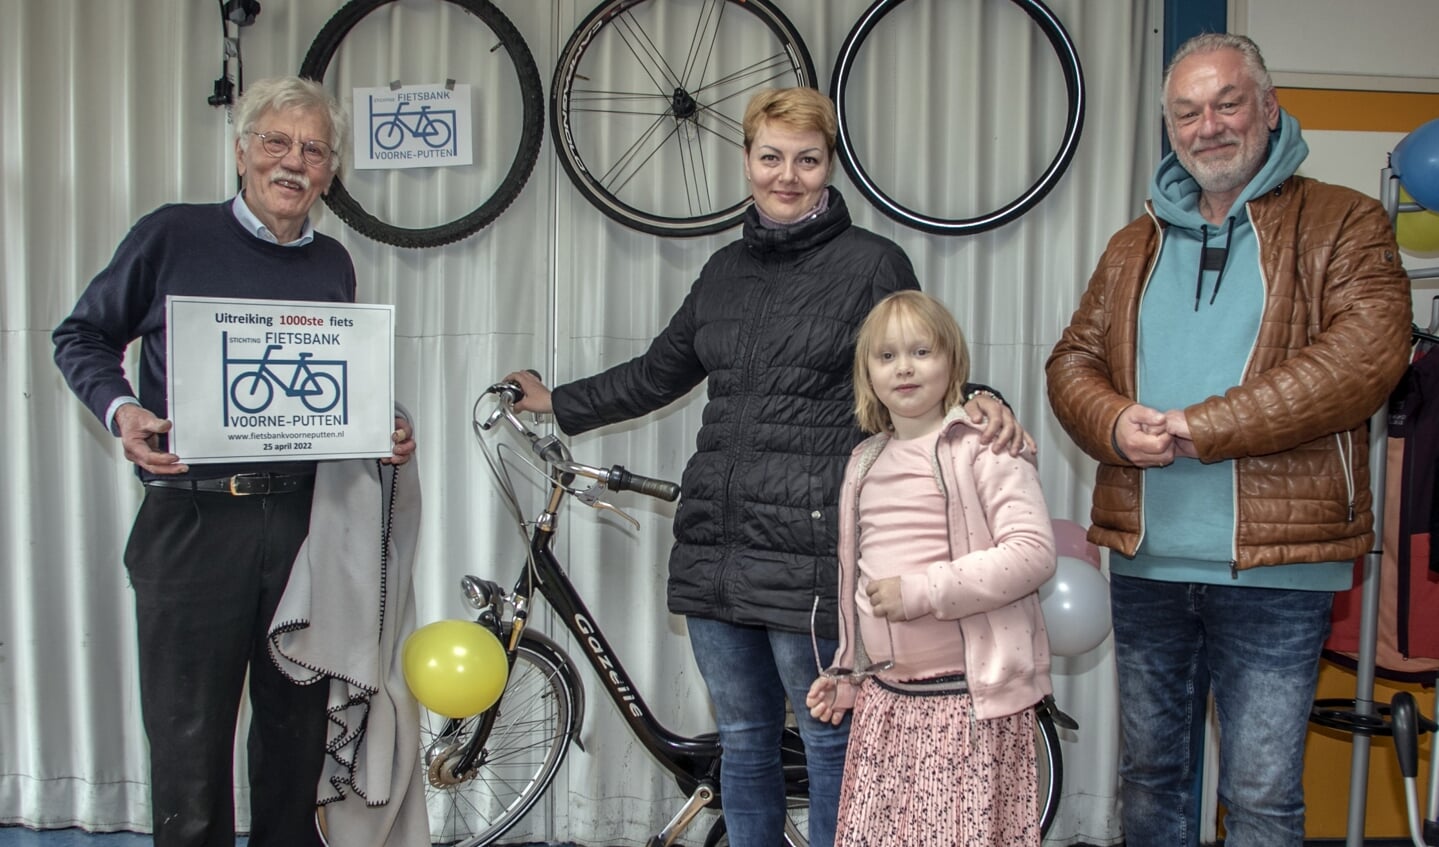 De fiets werd officieel uitgereikt door Walter Hendriks van de Kledingbank ZHE.